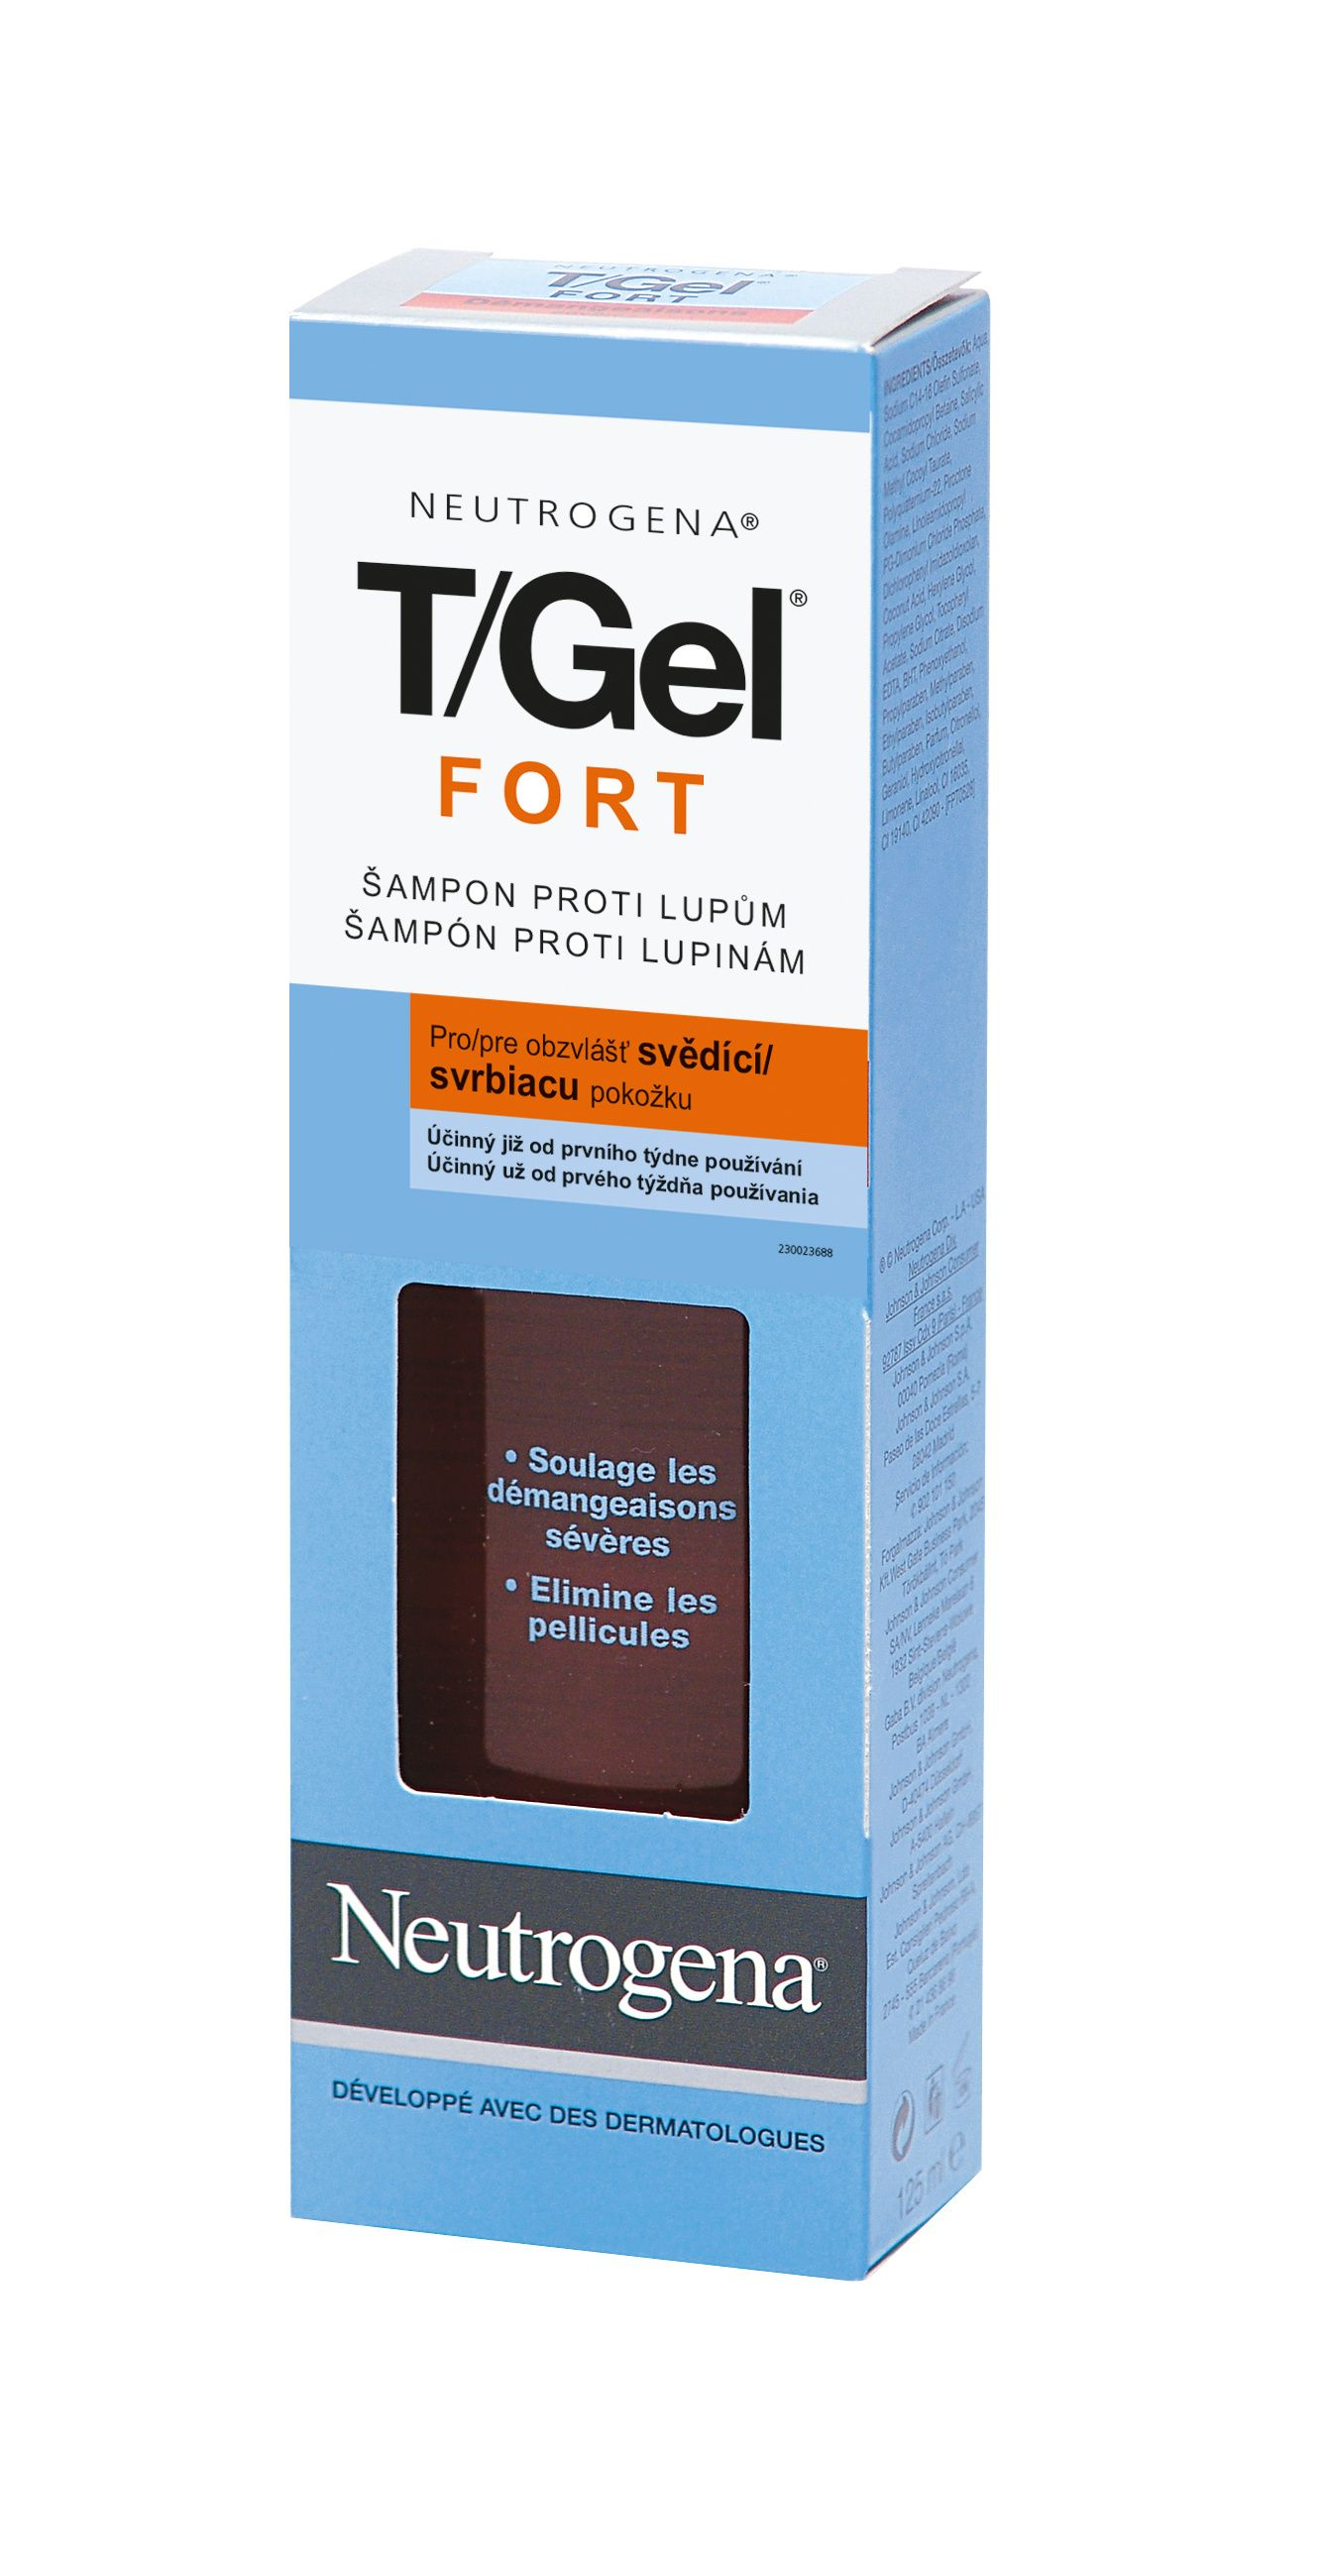 Neutrogena T/Gel Forte šampon proti lupům 125 ml Neutrogena